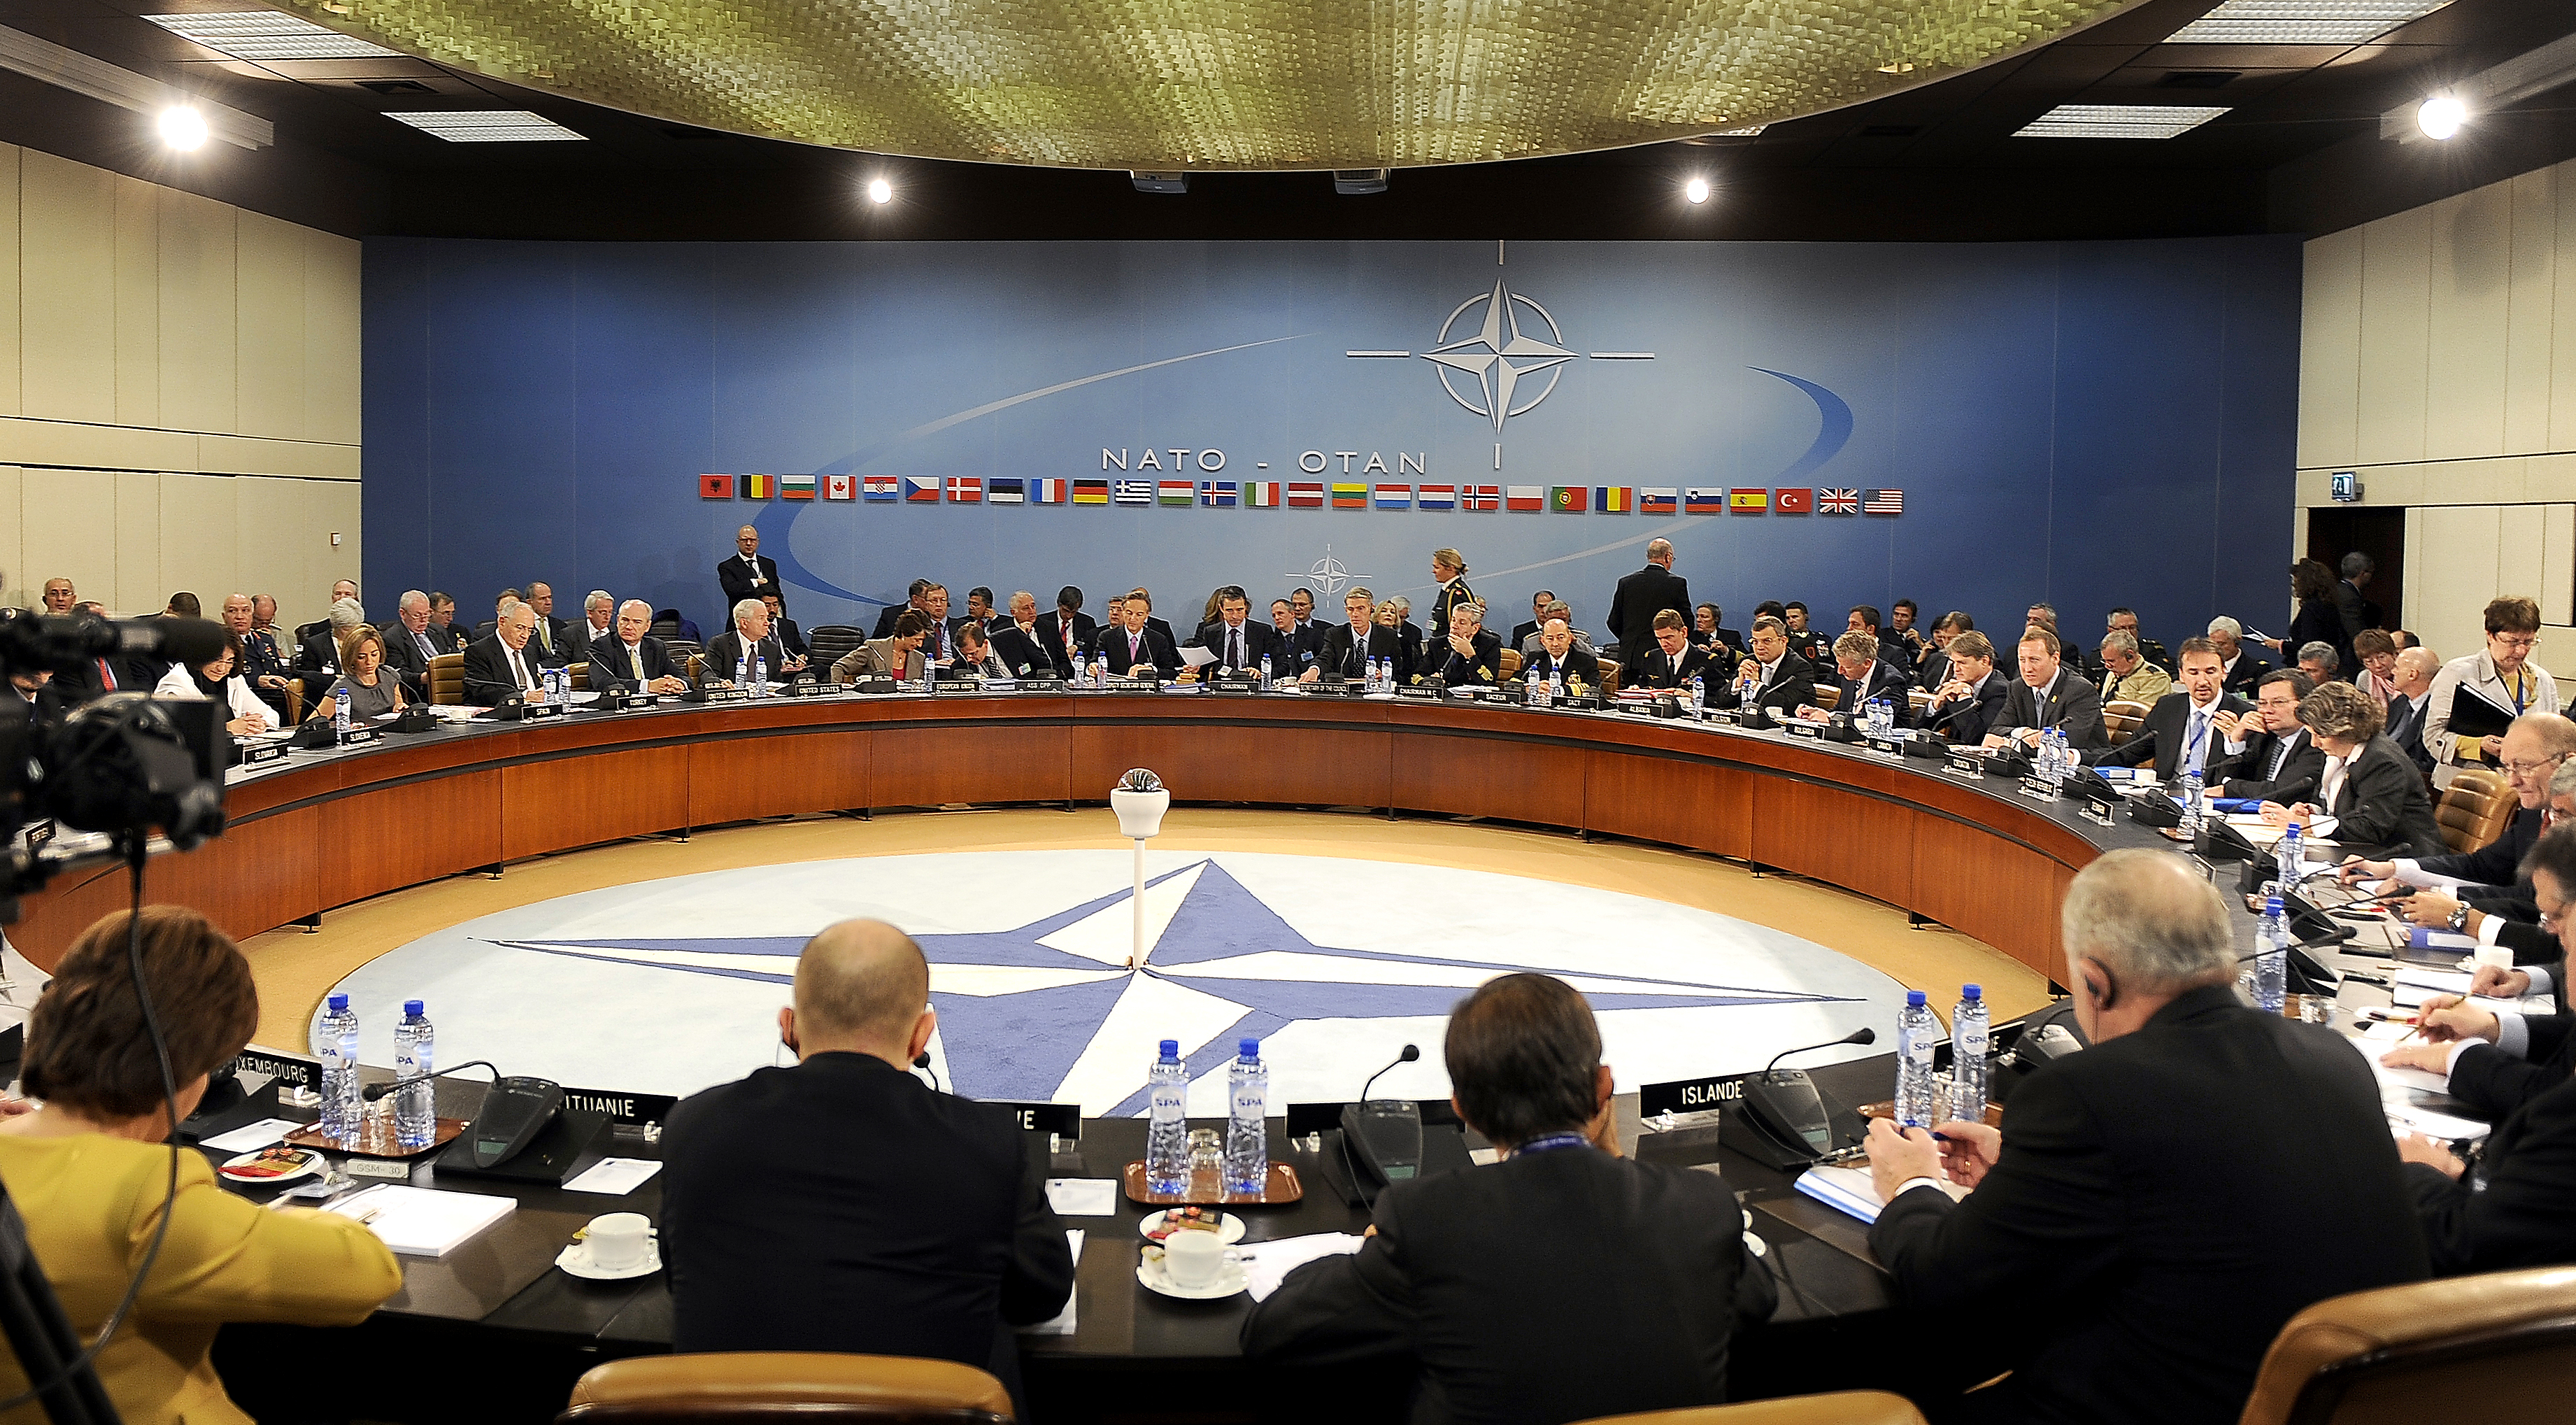 NATO Summit Image 0